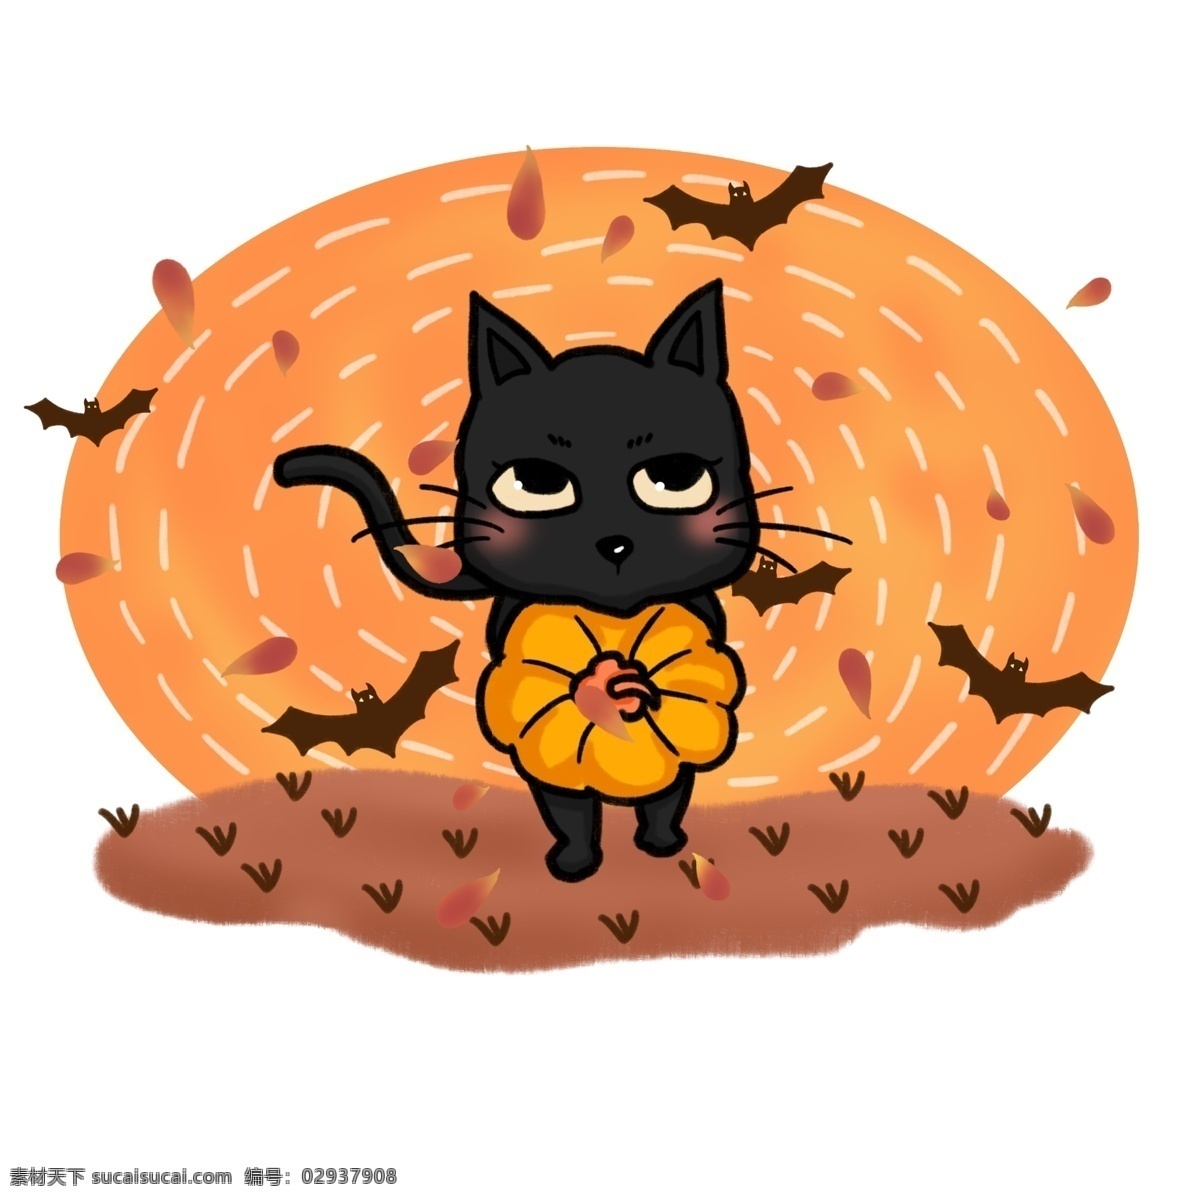 原创 手绘 风 插画 万圣节 黑猫 蝙蝠 南瓜 元素 花瓣 可爱 手绘风 板绘 猫咪 卡通